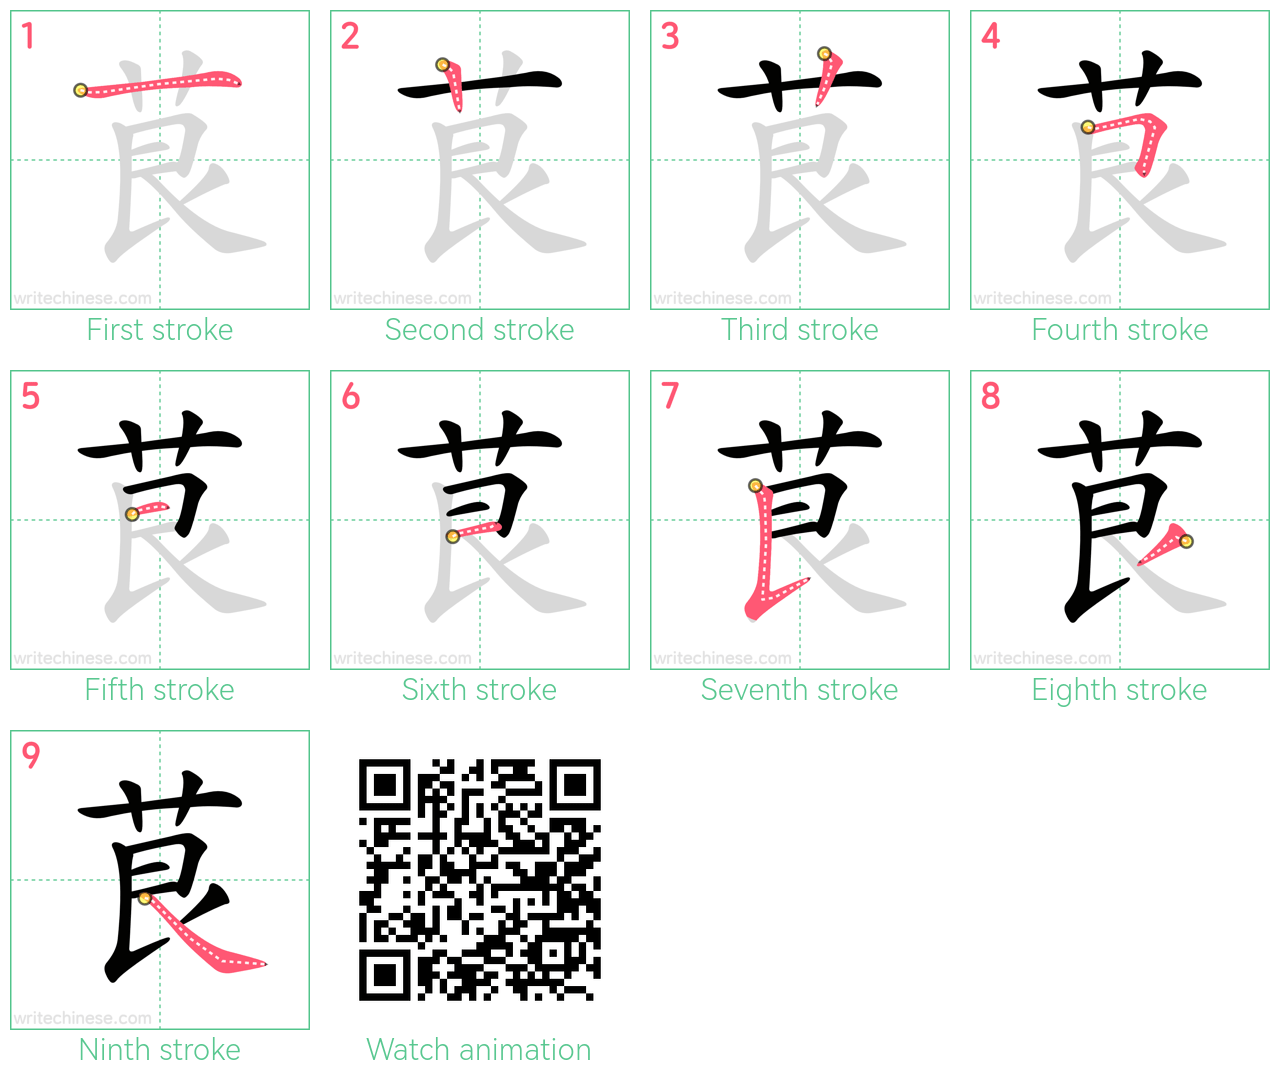 茛 step-by-step stroke order diagrams